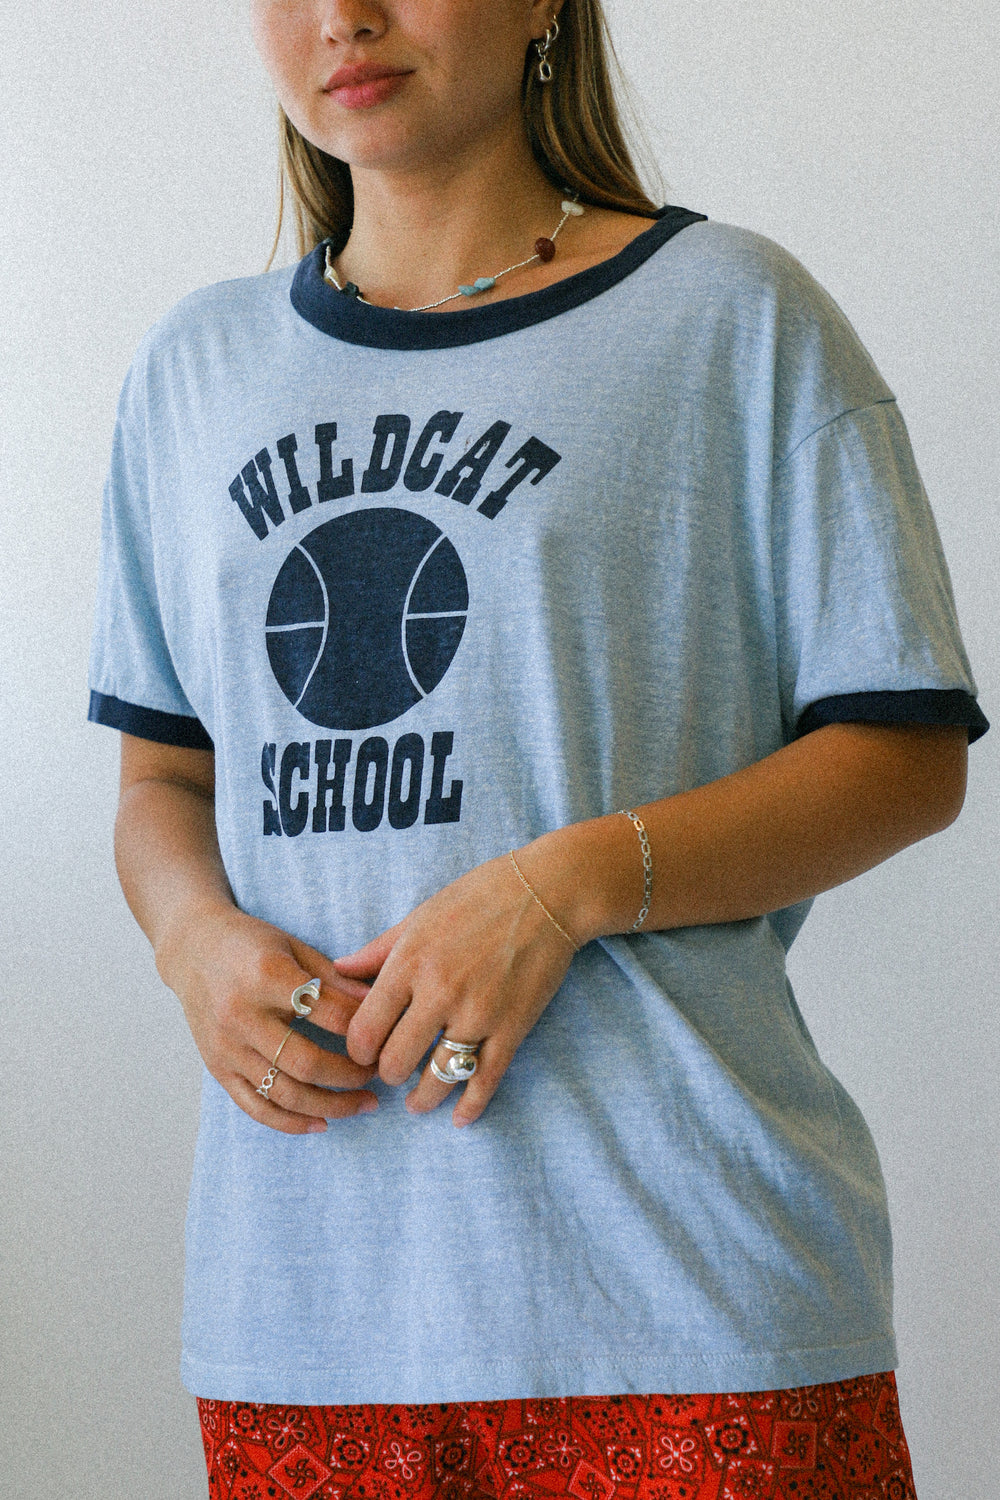 Wildcat School Tee